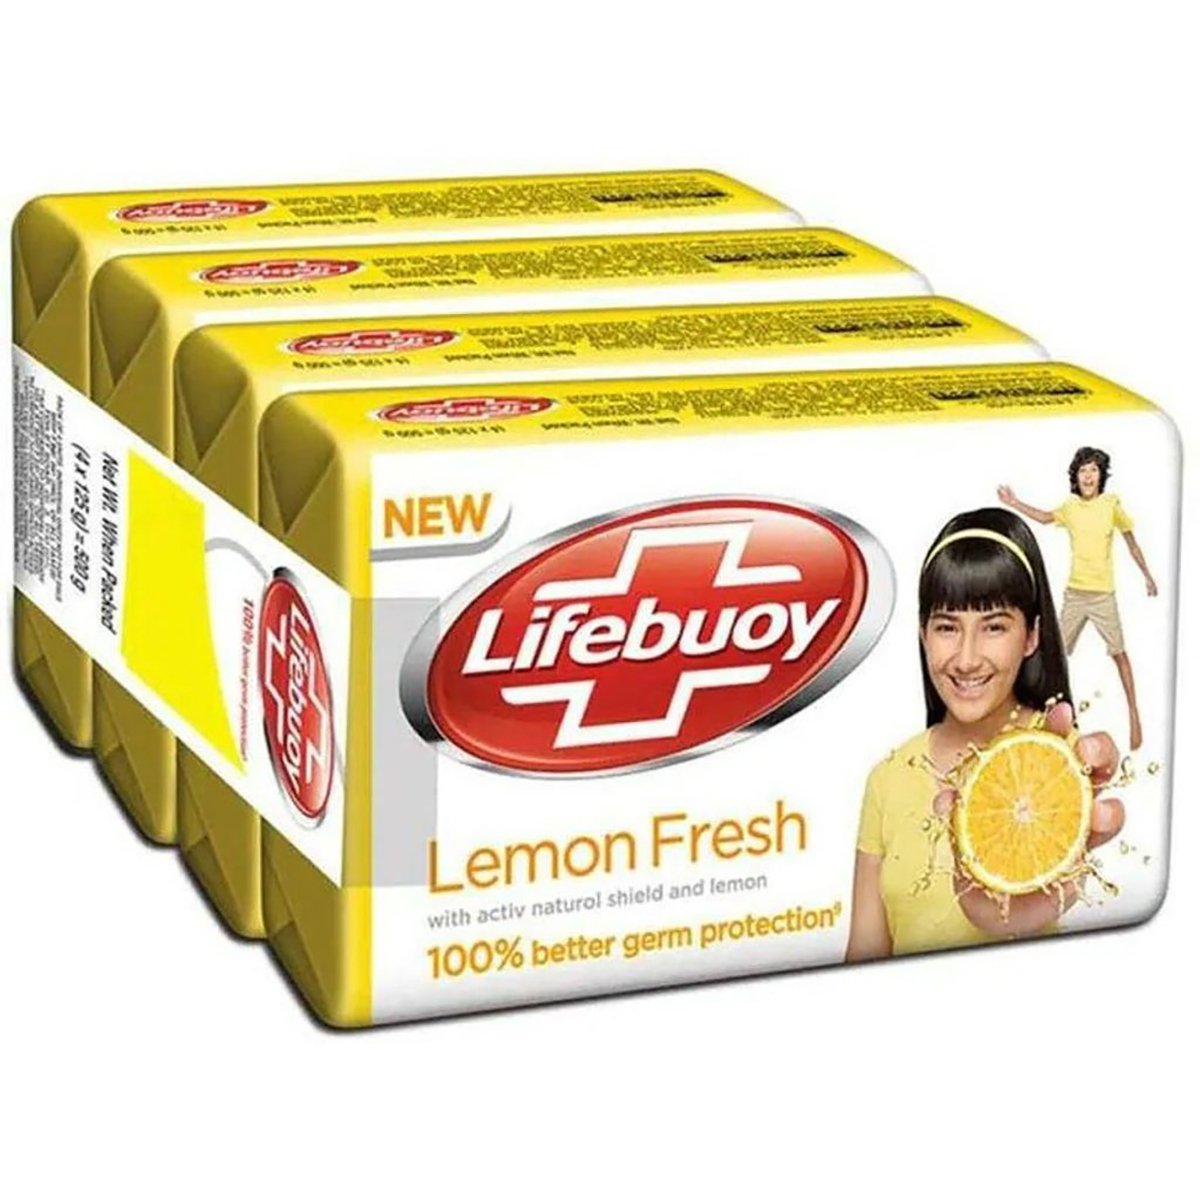 Lifebuoy Bath Soap Lemon fresh 4 x 115g